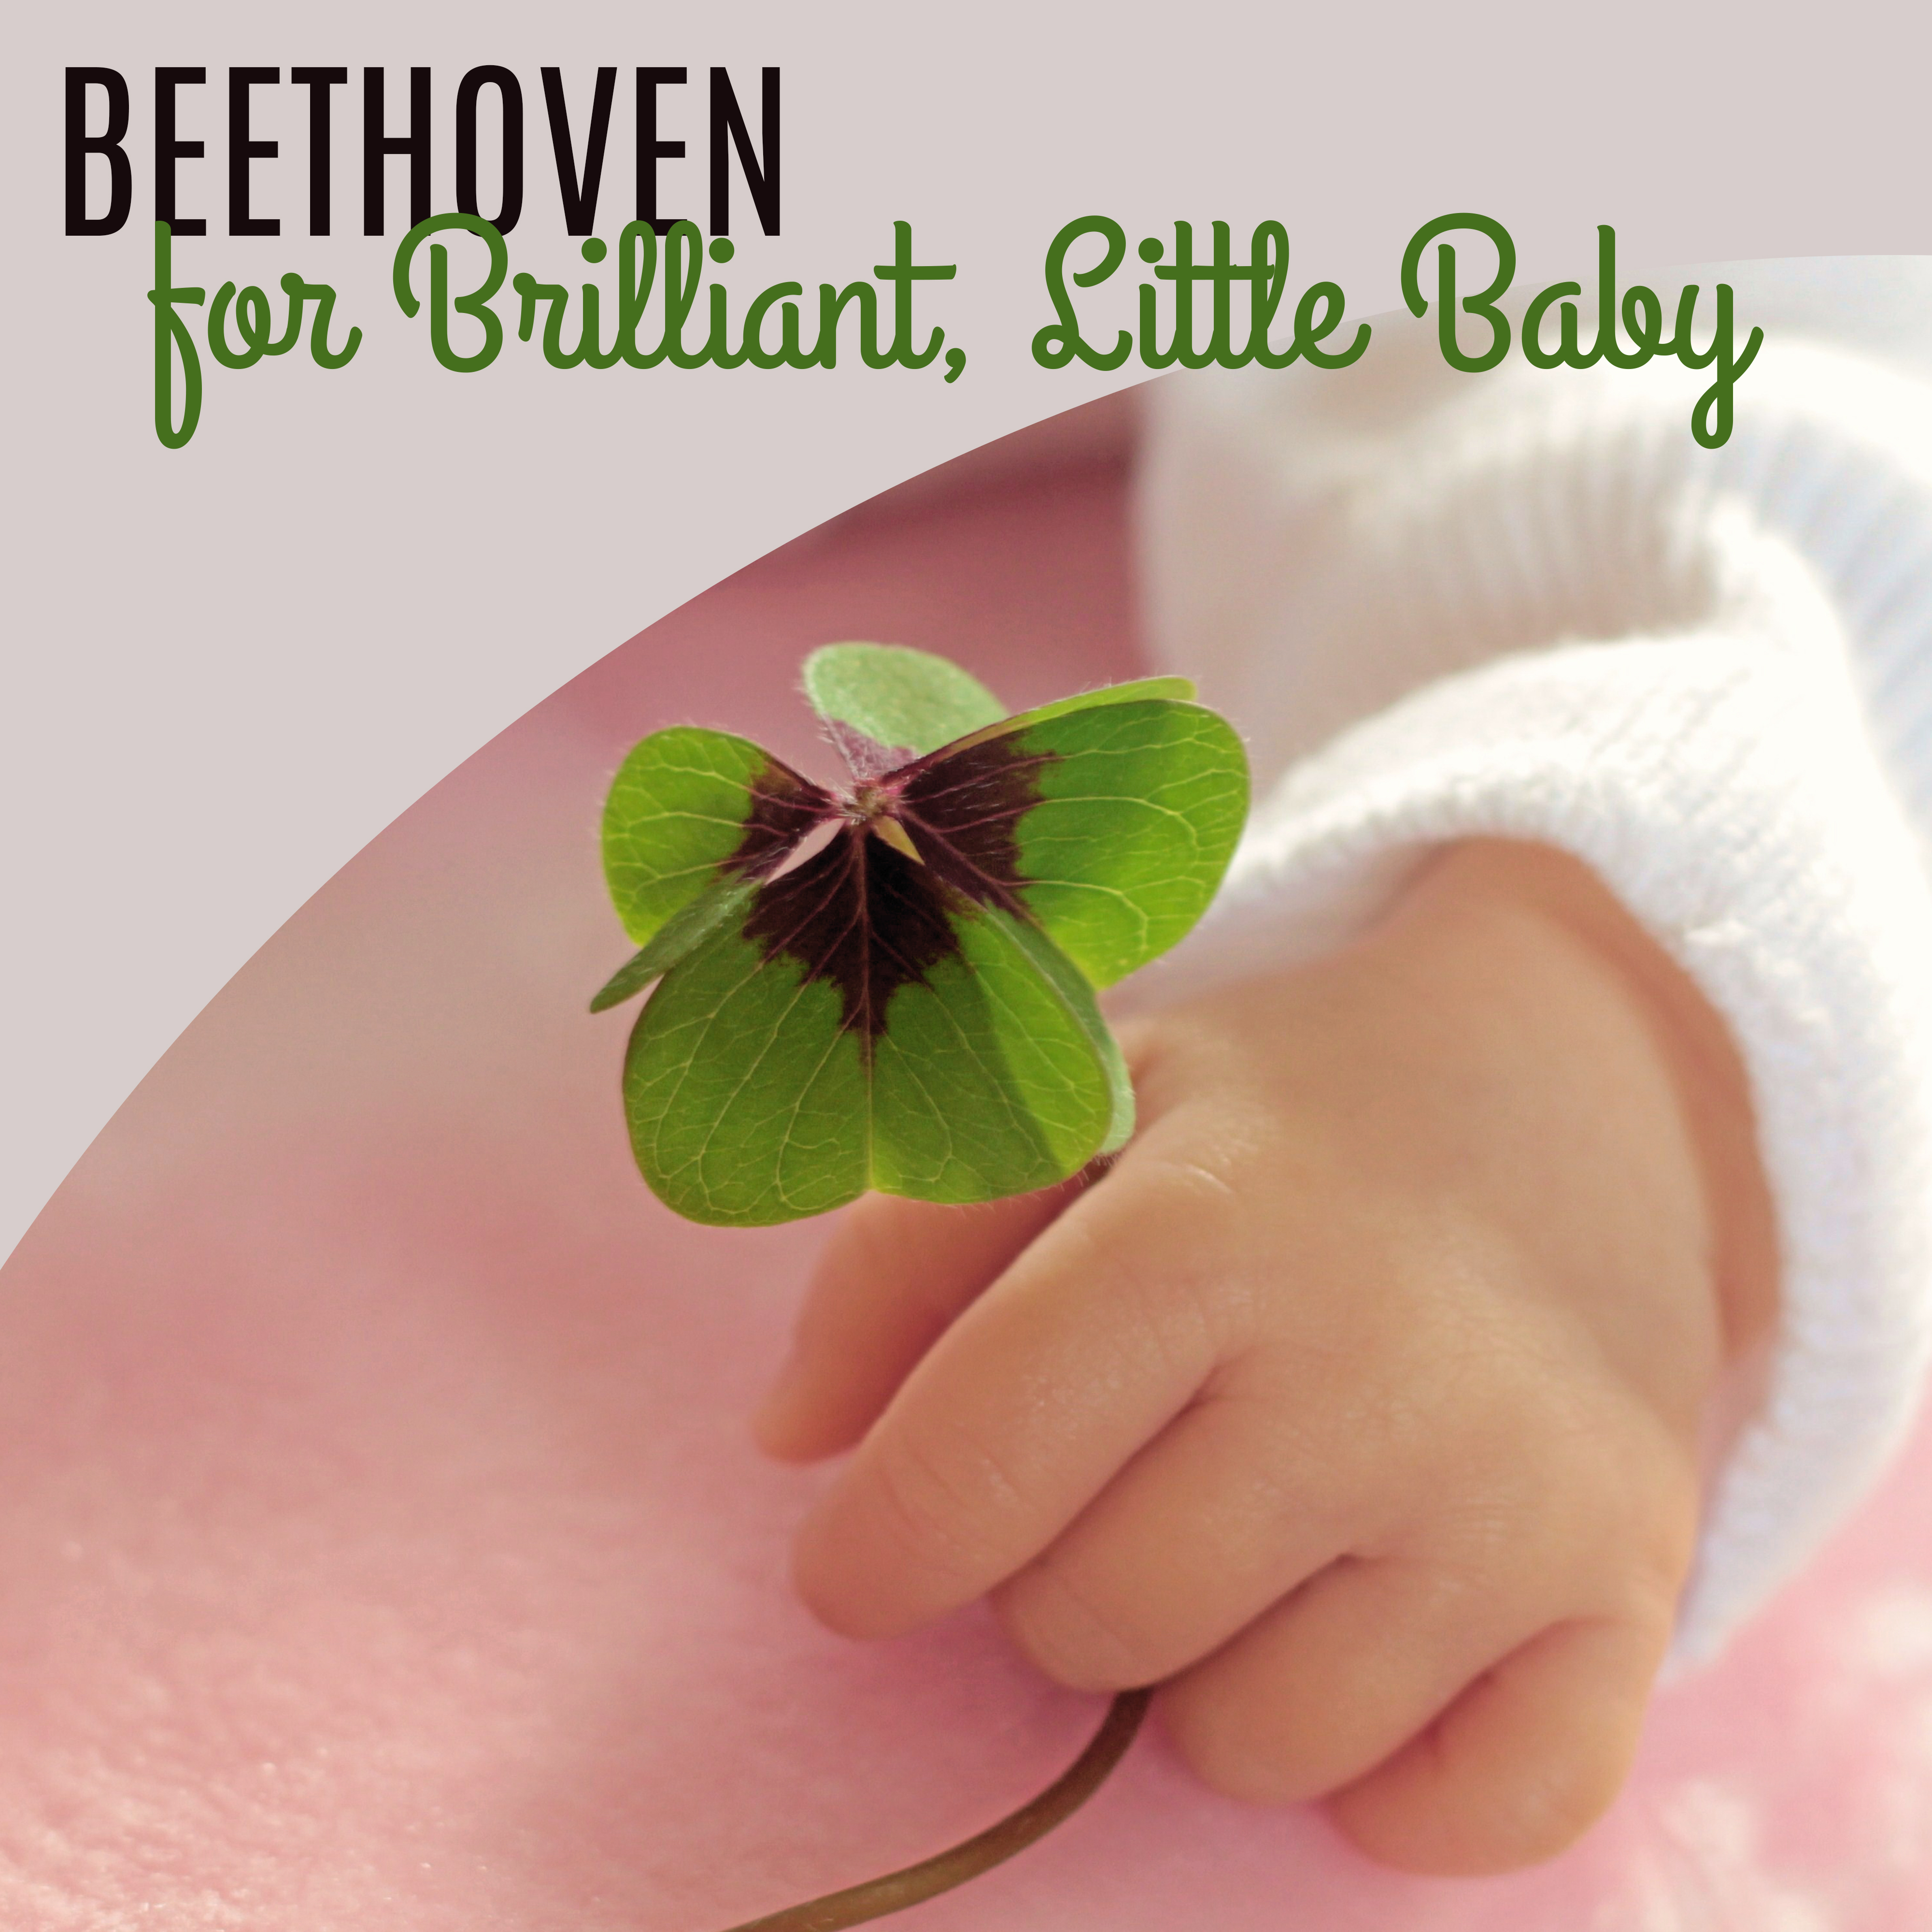 Beethoven for Brilliant, Little Baby – Educational Songs for Listening, Development Child, Better IQ